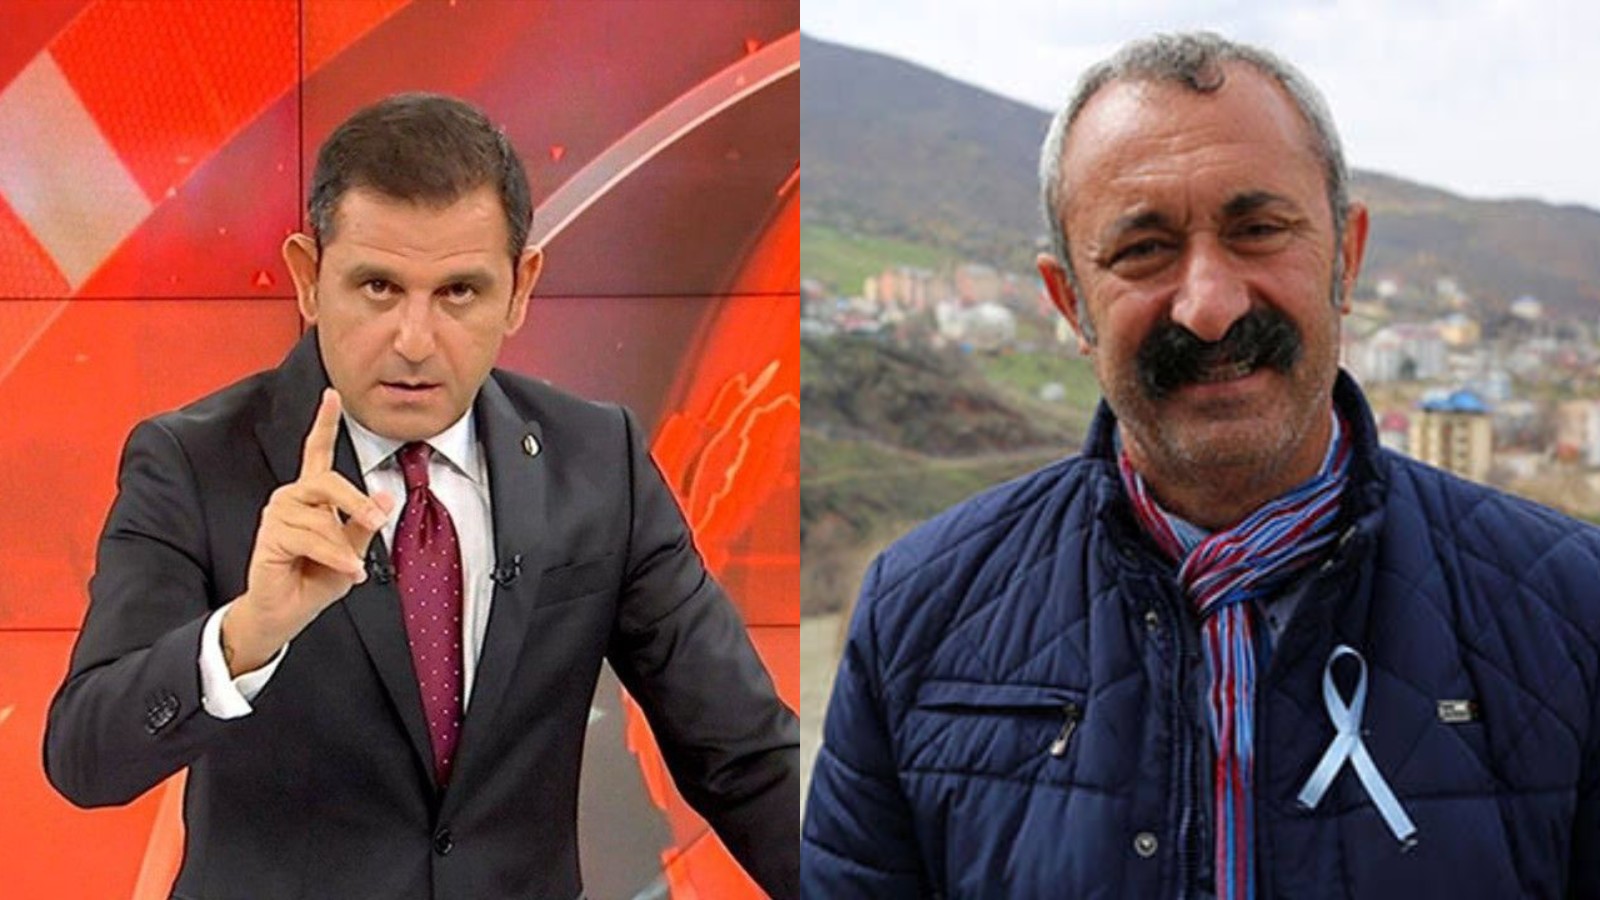 Fatih Portakal Maçoğlu'nu hedef aldı: Kadıköy'de insanlara devrim mi anlatacaksınız?